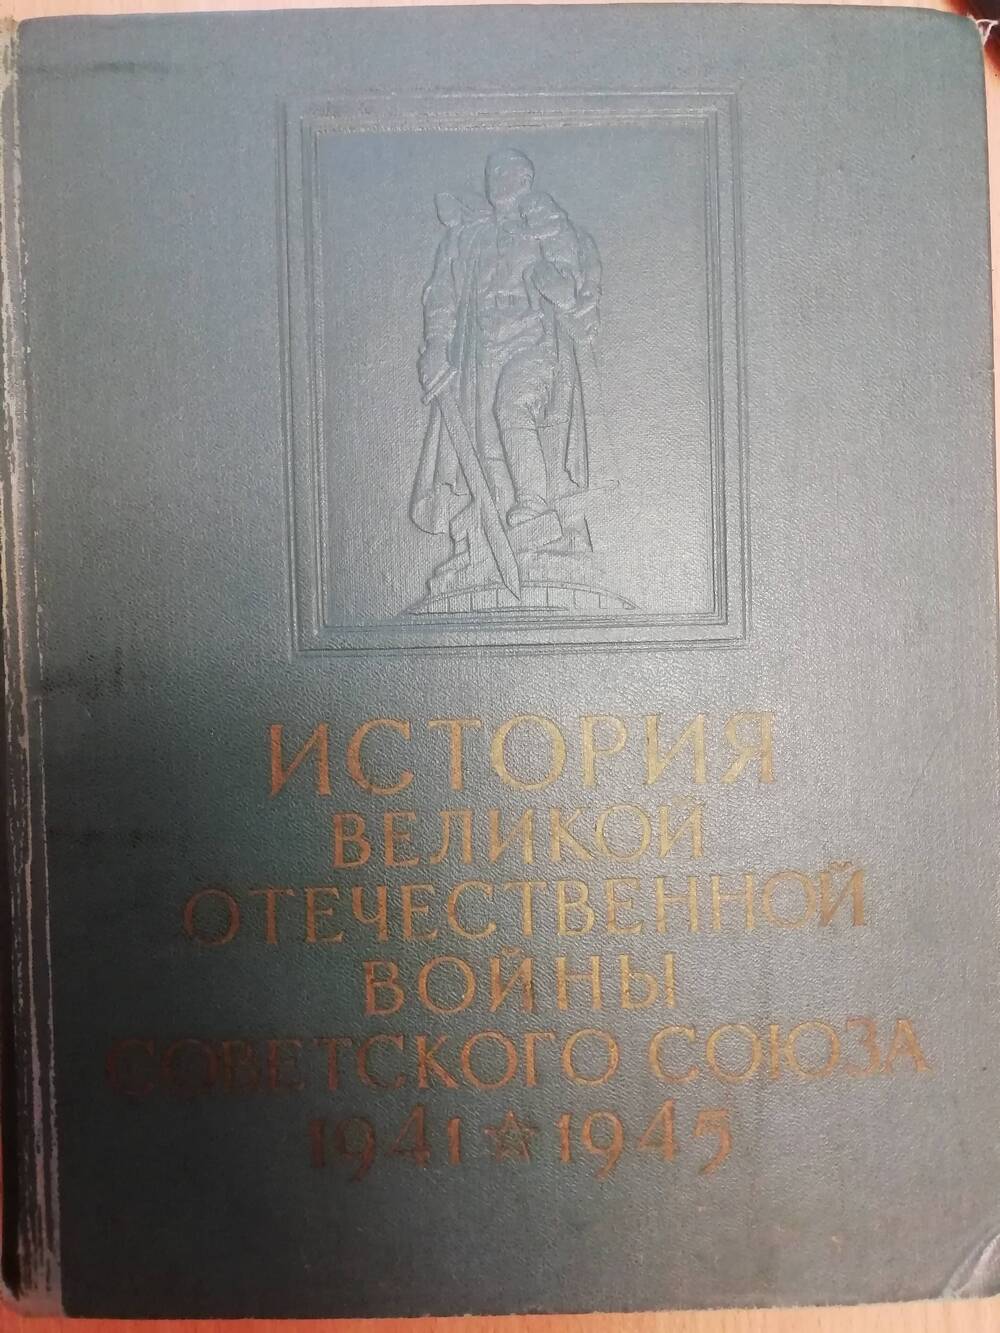 История Великой Отечественной войны Советского союза 1941-1945гг. Том 1. Сборник.